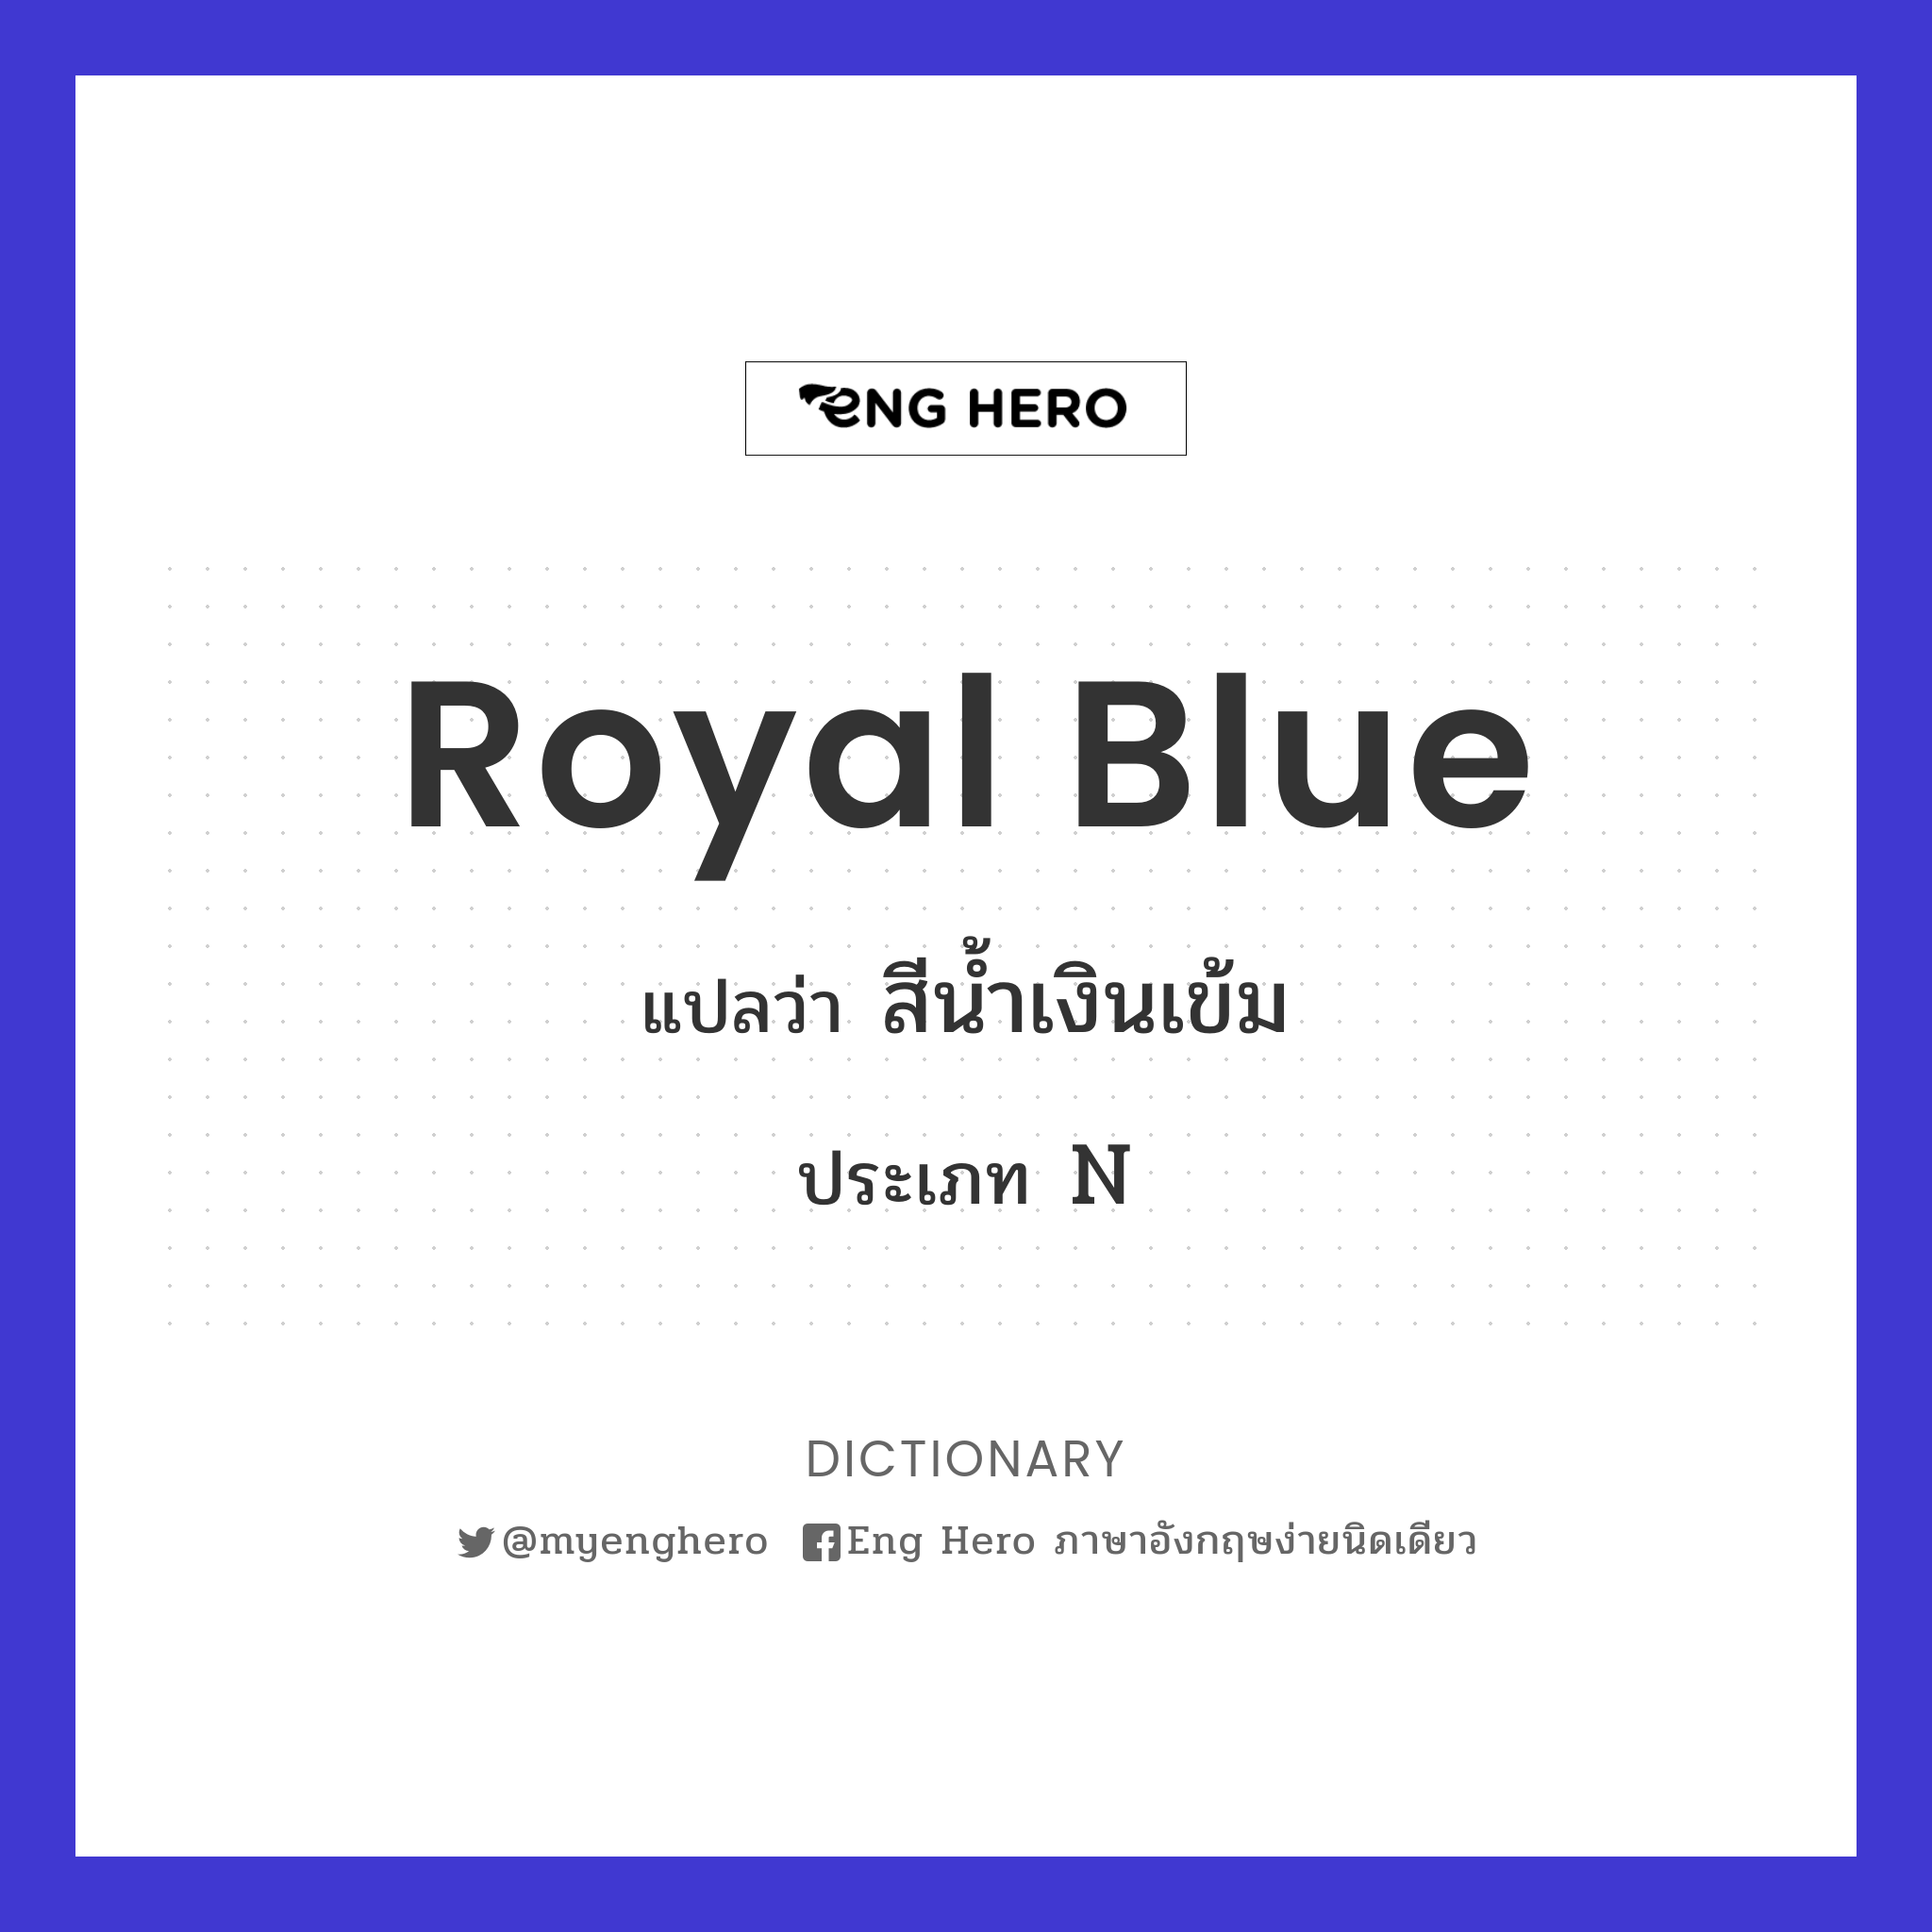 Royal Blue แปลว่า สีน้ำเงินเข้ม | Eng Hero เรียนภาษาอังกฤษ ออนไลน์ ฟรี